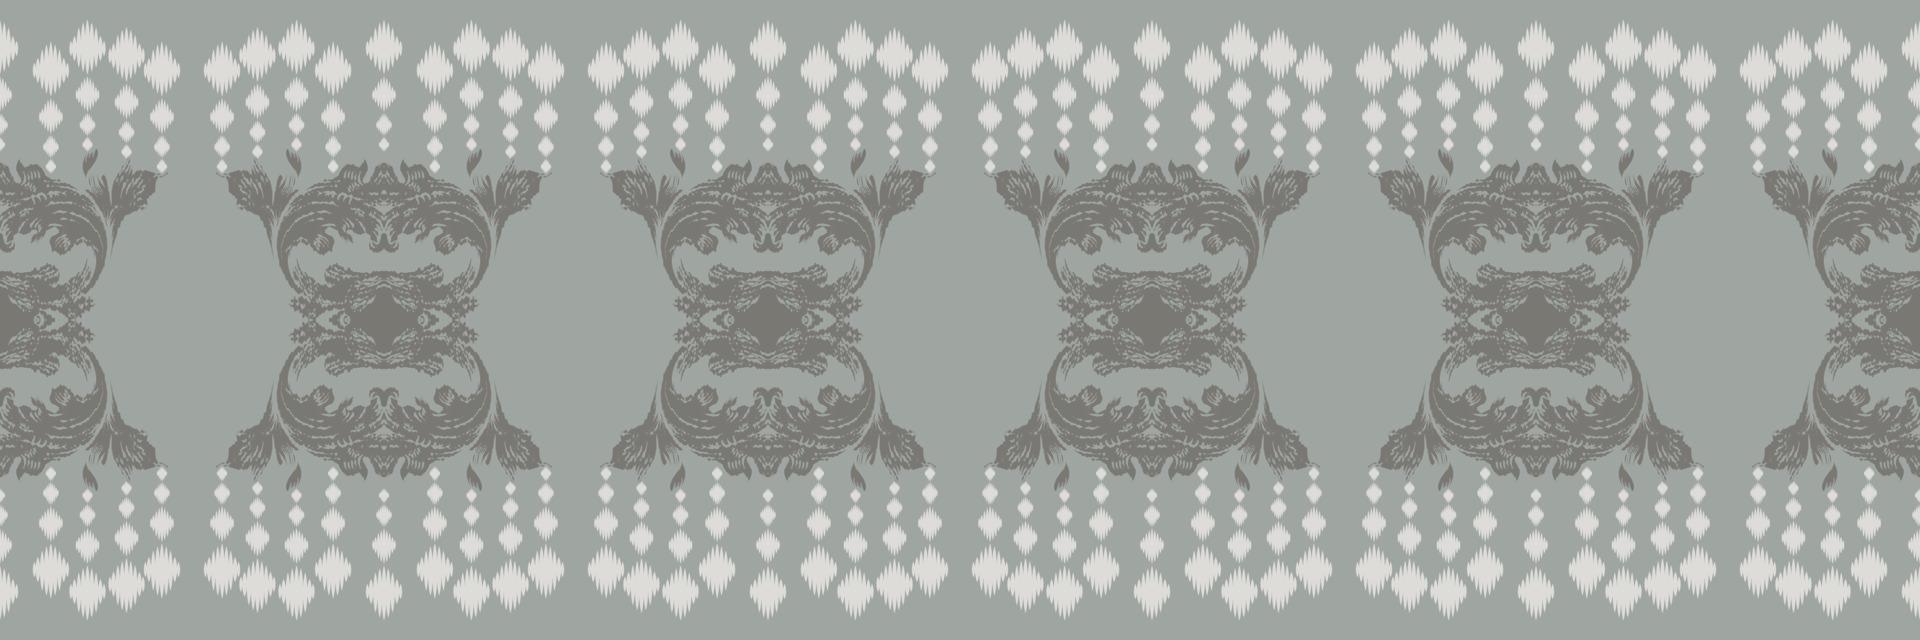 batik textile ethnique ikat triangle modèle sans couture numérique vecteur conception pour impression saree kurti borneo tissu frontière brosse symboles échantillons élégant